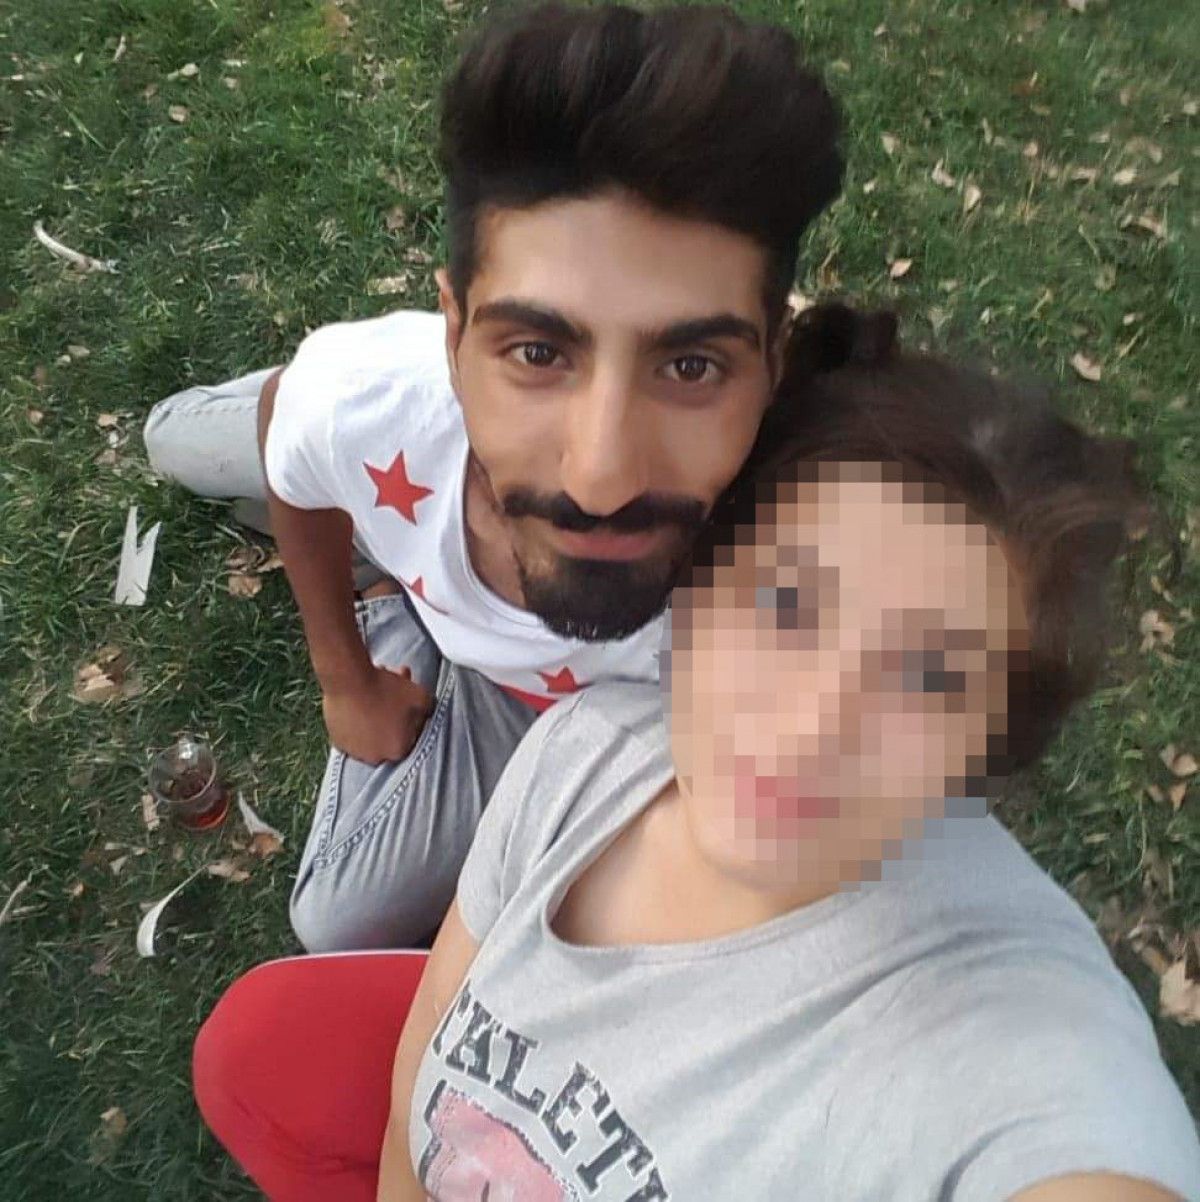 İzmir de kocası cezaevinde olan kadın, tartıştığı sevgilisini bıçakladı #1